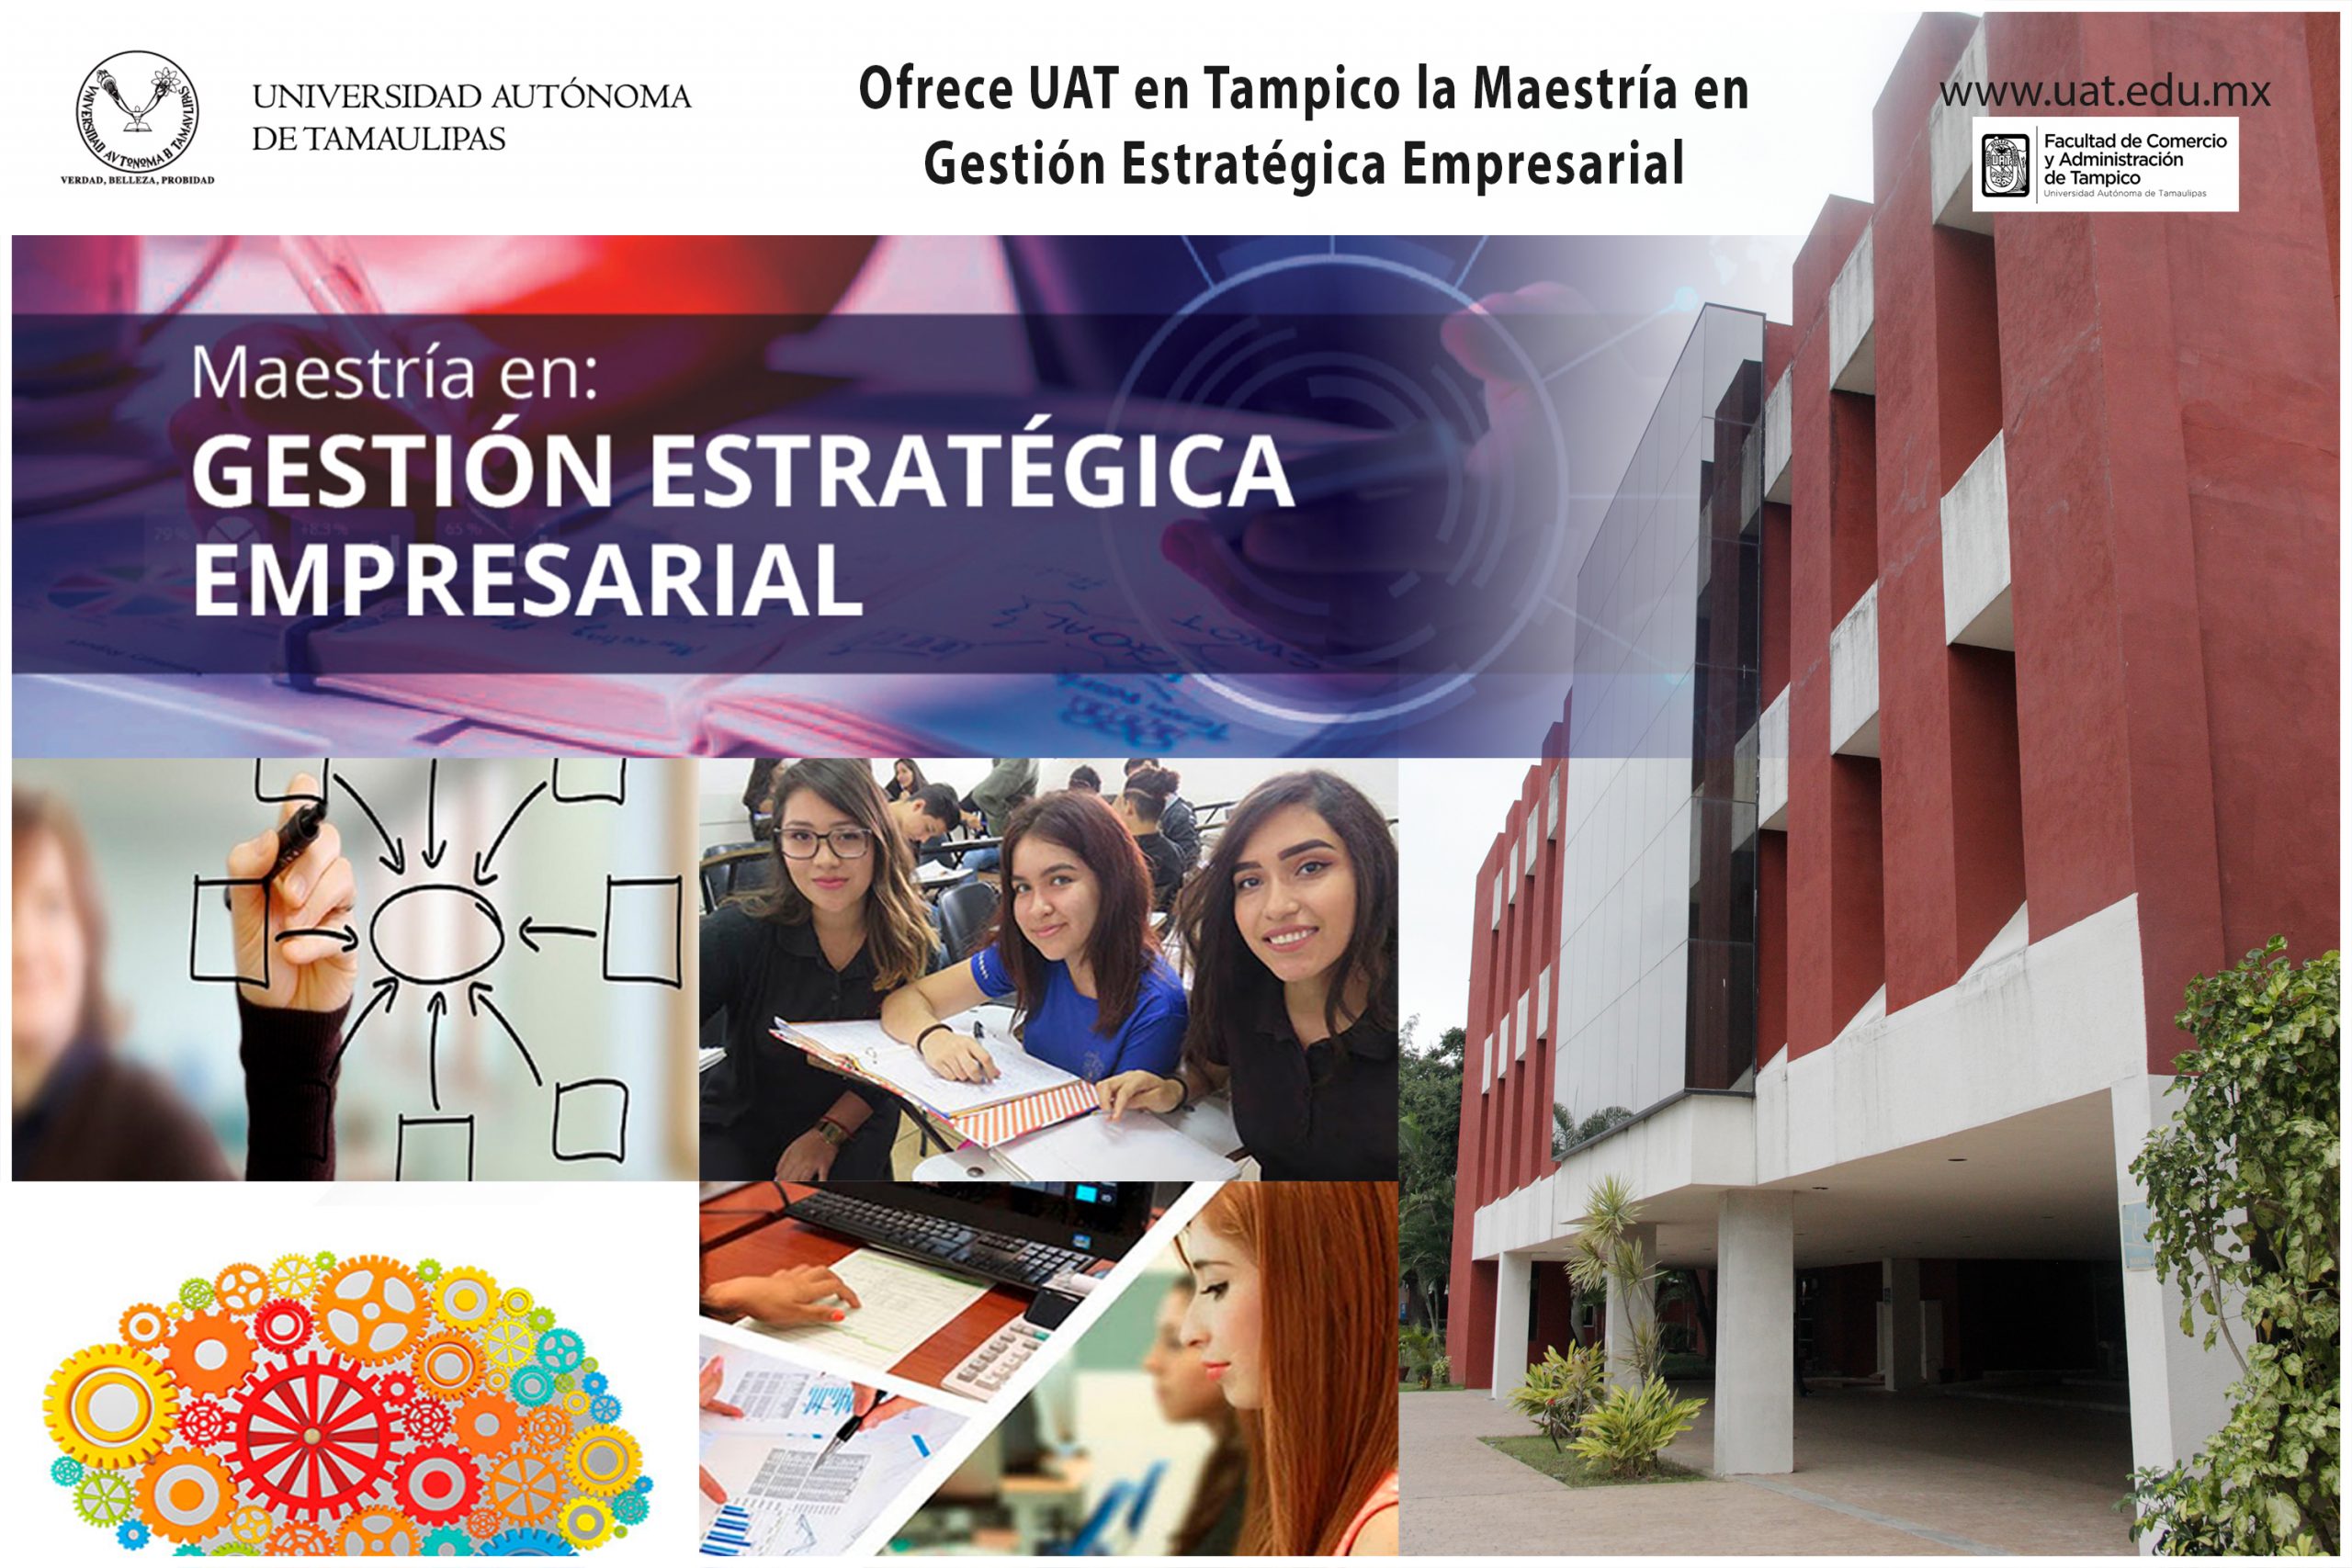 Ofrece UAT en Tampico la Maestría en Gestión Estratégica Empresarial